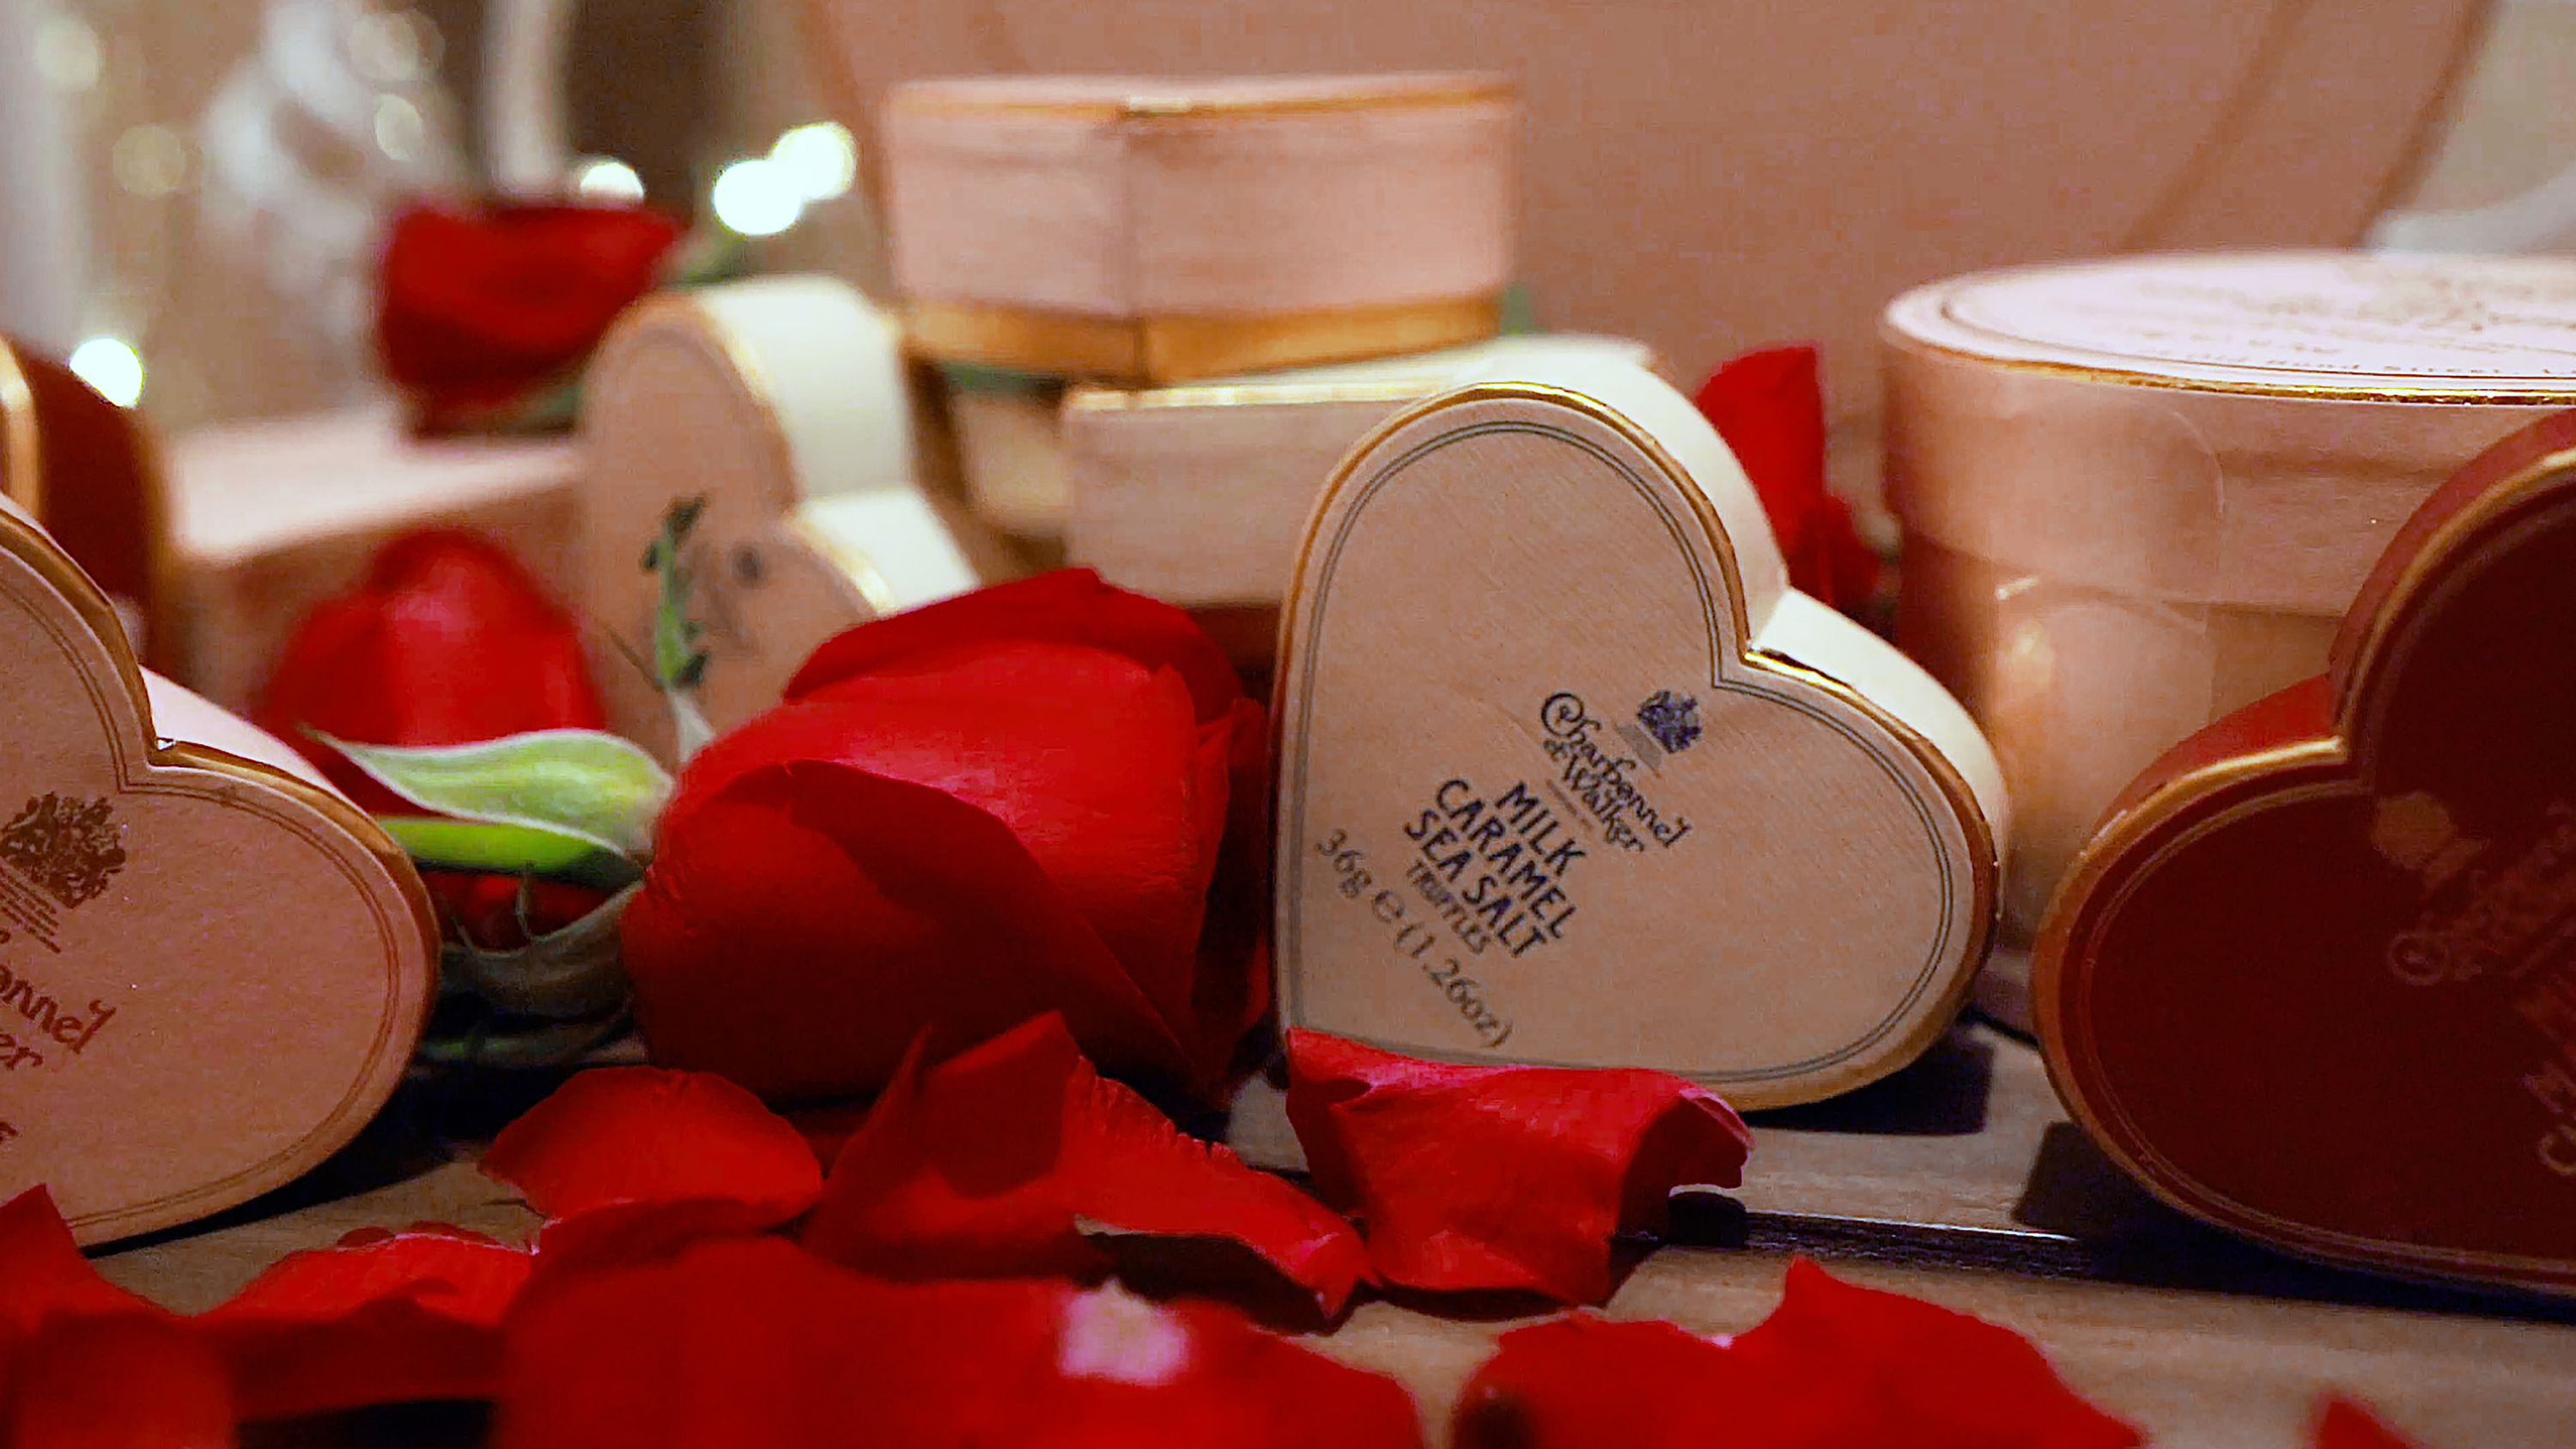 Romantic Valentine's Day gift ideas under $500.